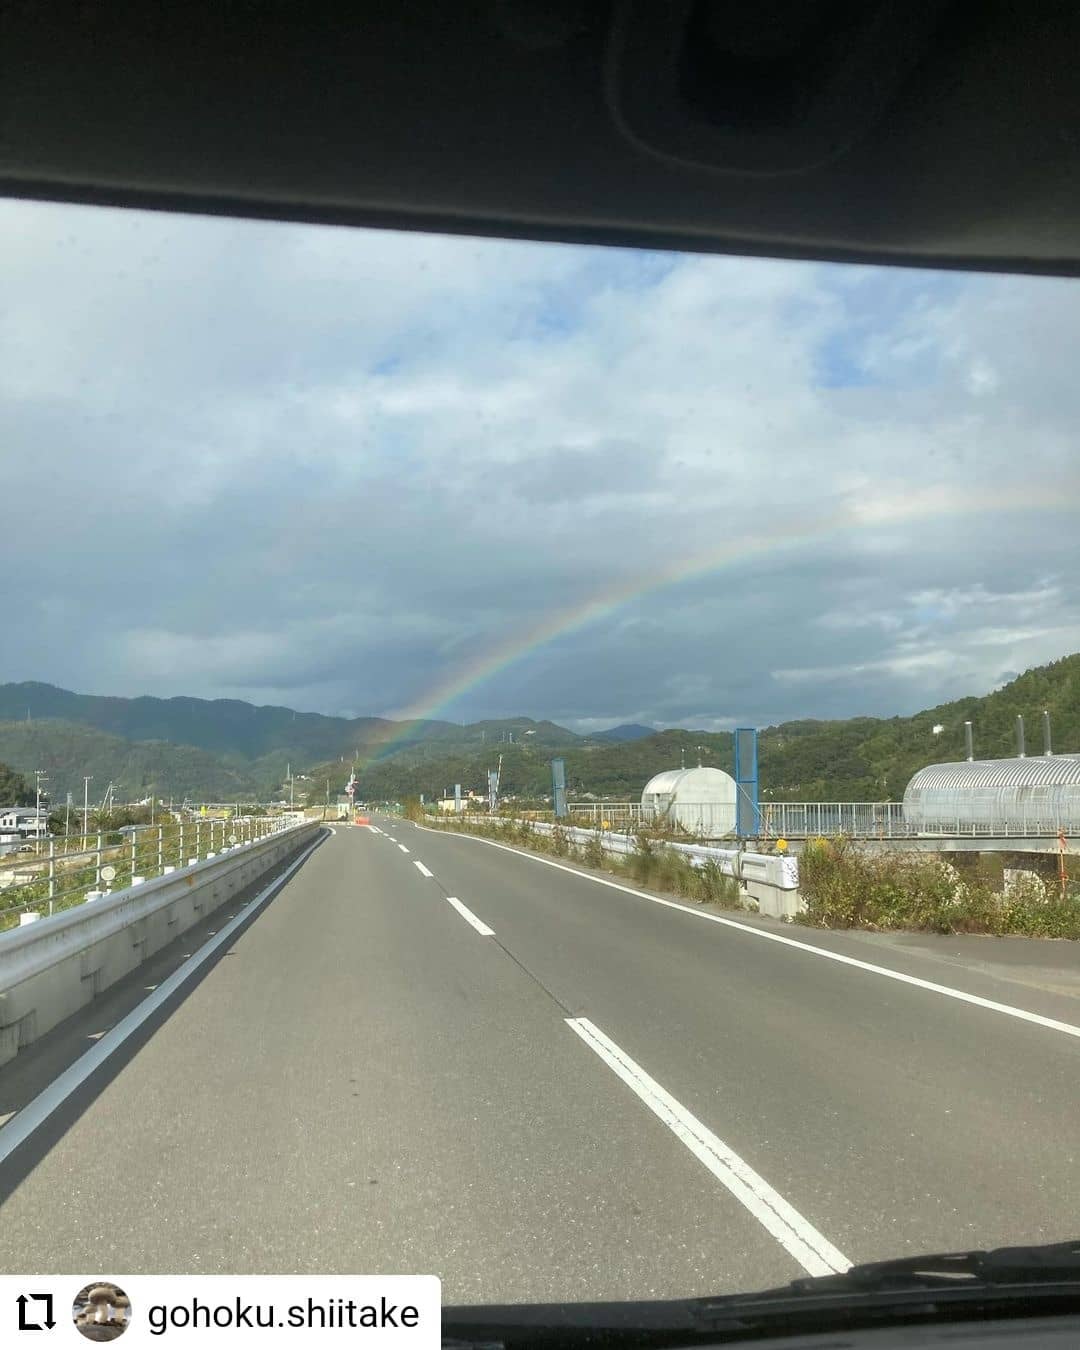 #Repost @gohoku.shiitake...おはようございます。本日、日曜市に出店します。1枚目は、木曜日に見た虹の写真です。虹の根元には、宝物が埋まっているというような話を思い出しました。今ここにでっかいシャベルがあれば、と思ったのは内緒です。2枚目は最近お気に入りのサラダです。たっぷりのルッコラに、ベーコンとしいたけを炒めてビネガーやら何やらで味付けしたドレッシング的なものをのっけてトロトロの半熟卵をトッピングです。しいたけ料理の新しい一品としてオススメです。#いの町吾北地区#菌床しいたけ# 吾北のしいたけ屋#土佐の日曜市#先週もなかなかの忙しさでした